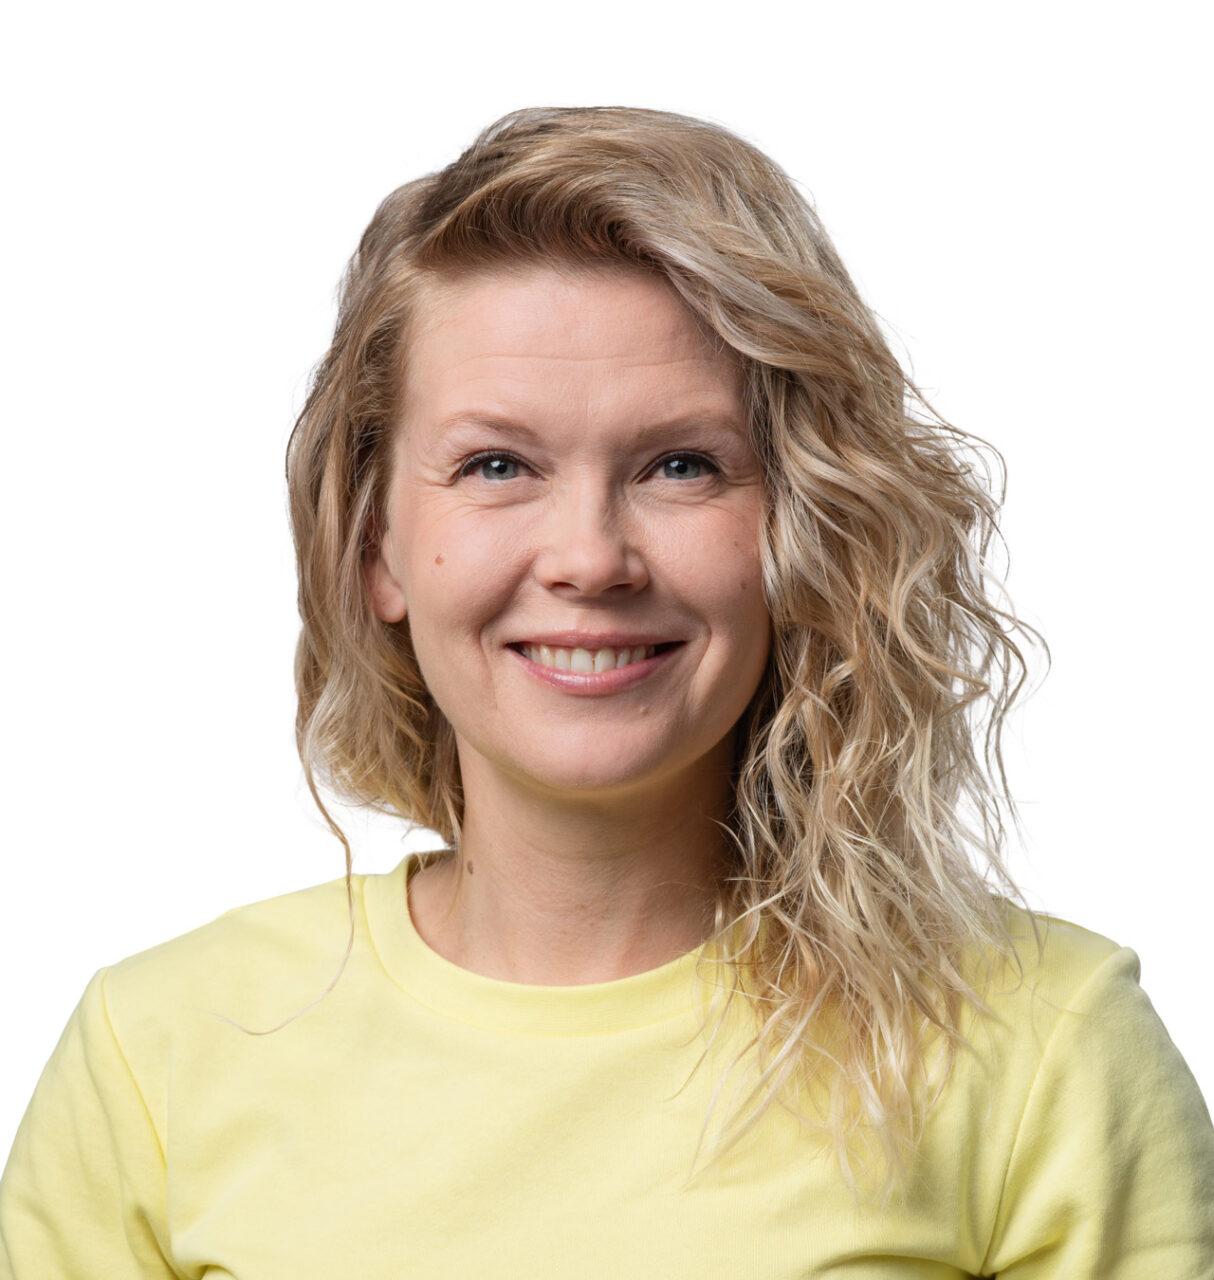 Eurovaaliehdokas Tiina Kyllönen katsoo kameraan.